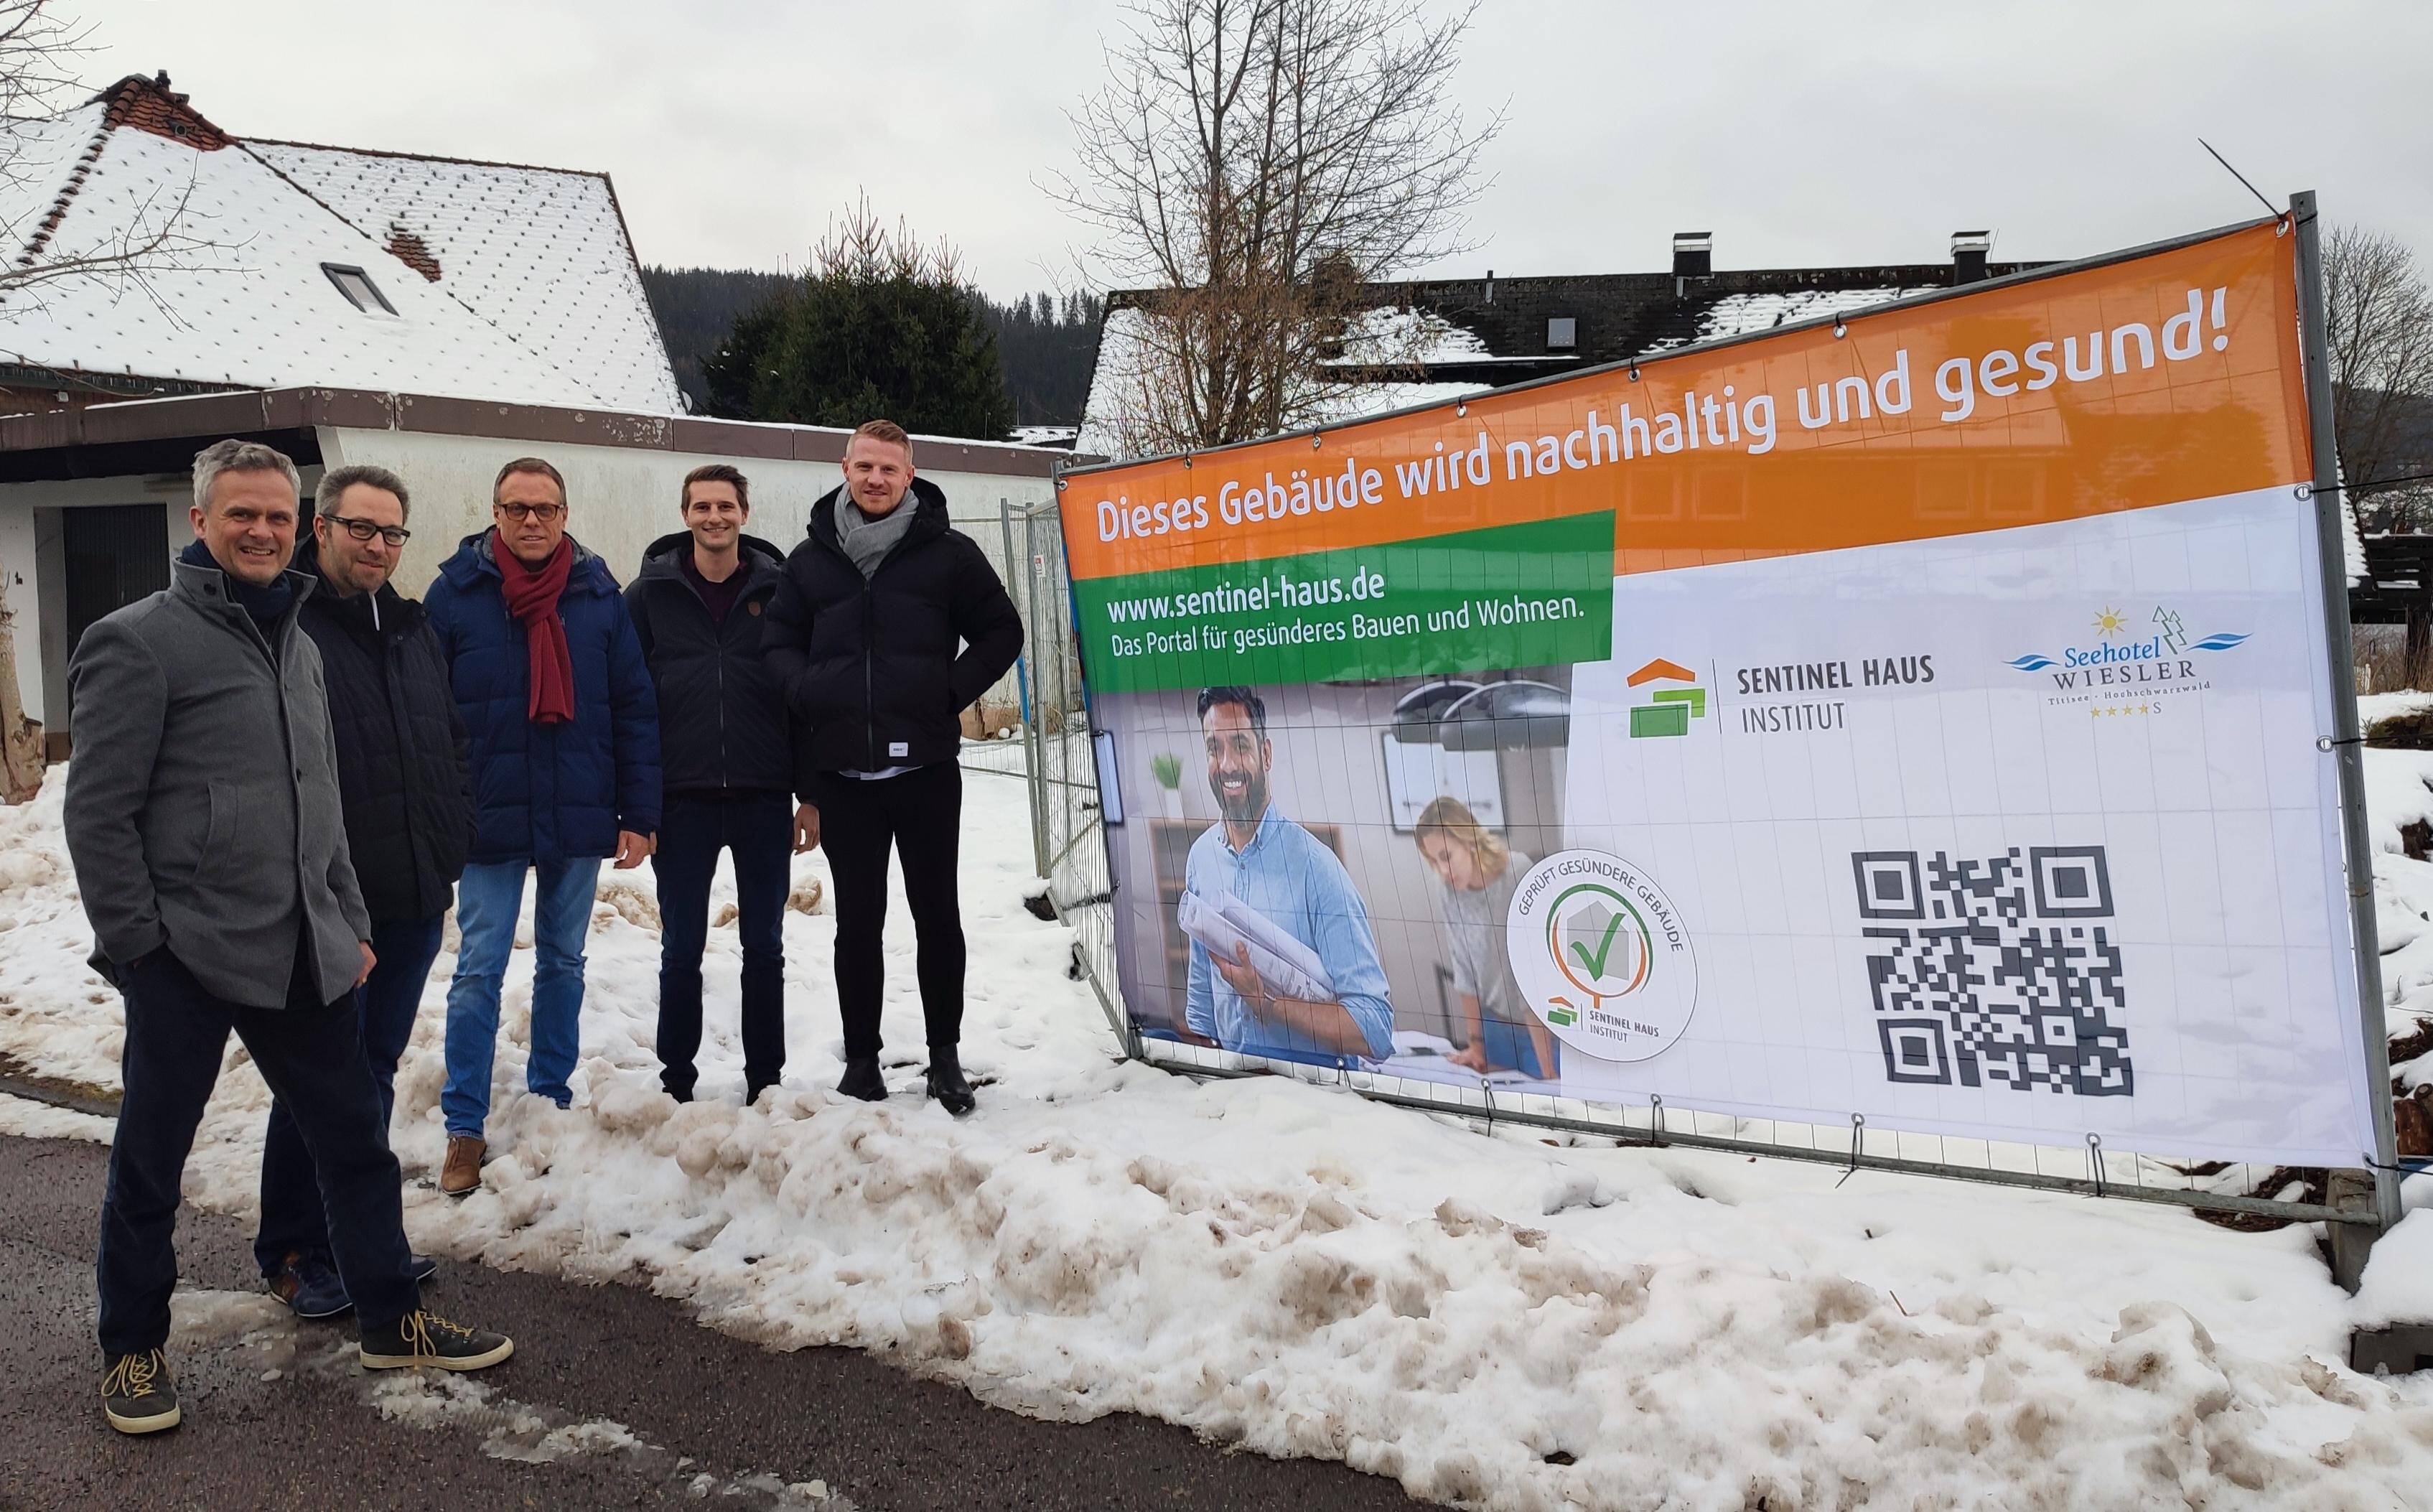 Das Team vorort bei der Baustelle in Titisee-Neustadt. Rechts davon der neue Banner.